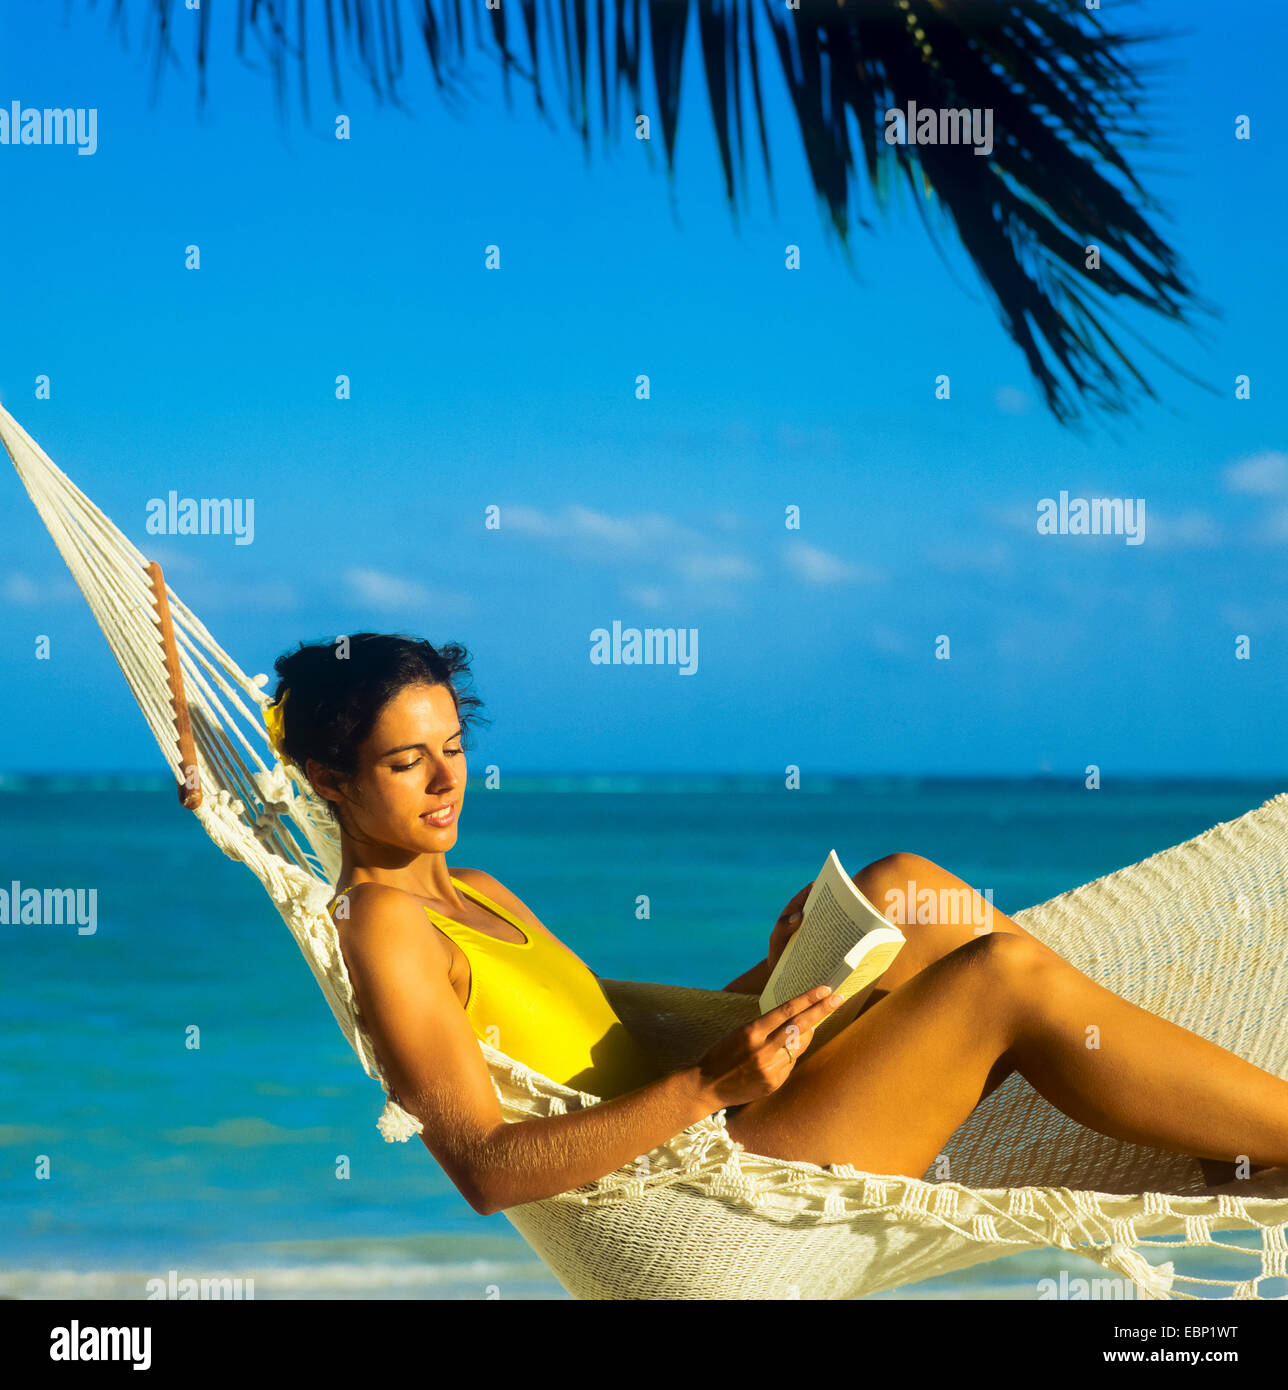 Jeune femme lisant un livre en hamac sur la plage des Caraïbes Guadeloupe Antilles Françaises Petites Antilles Banque D'Images